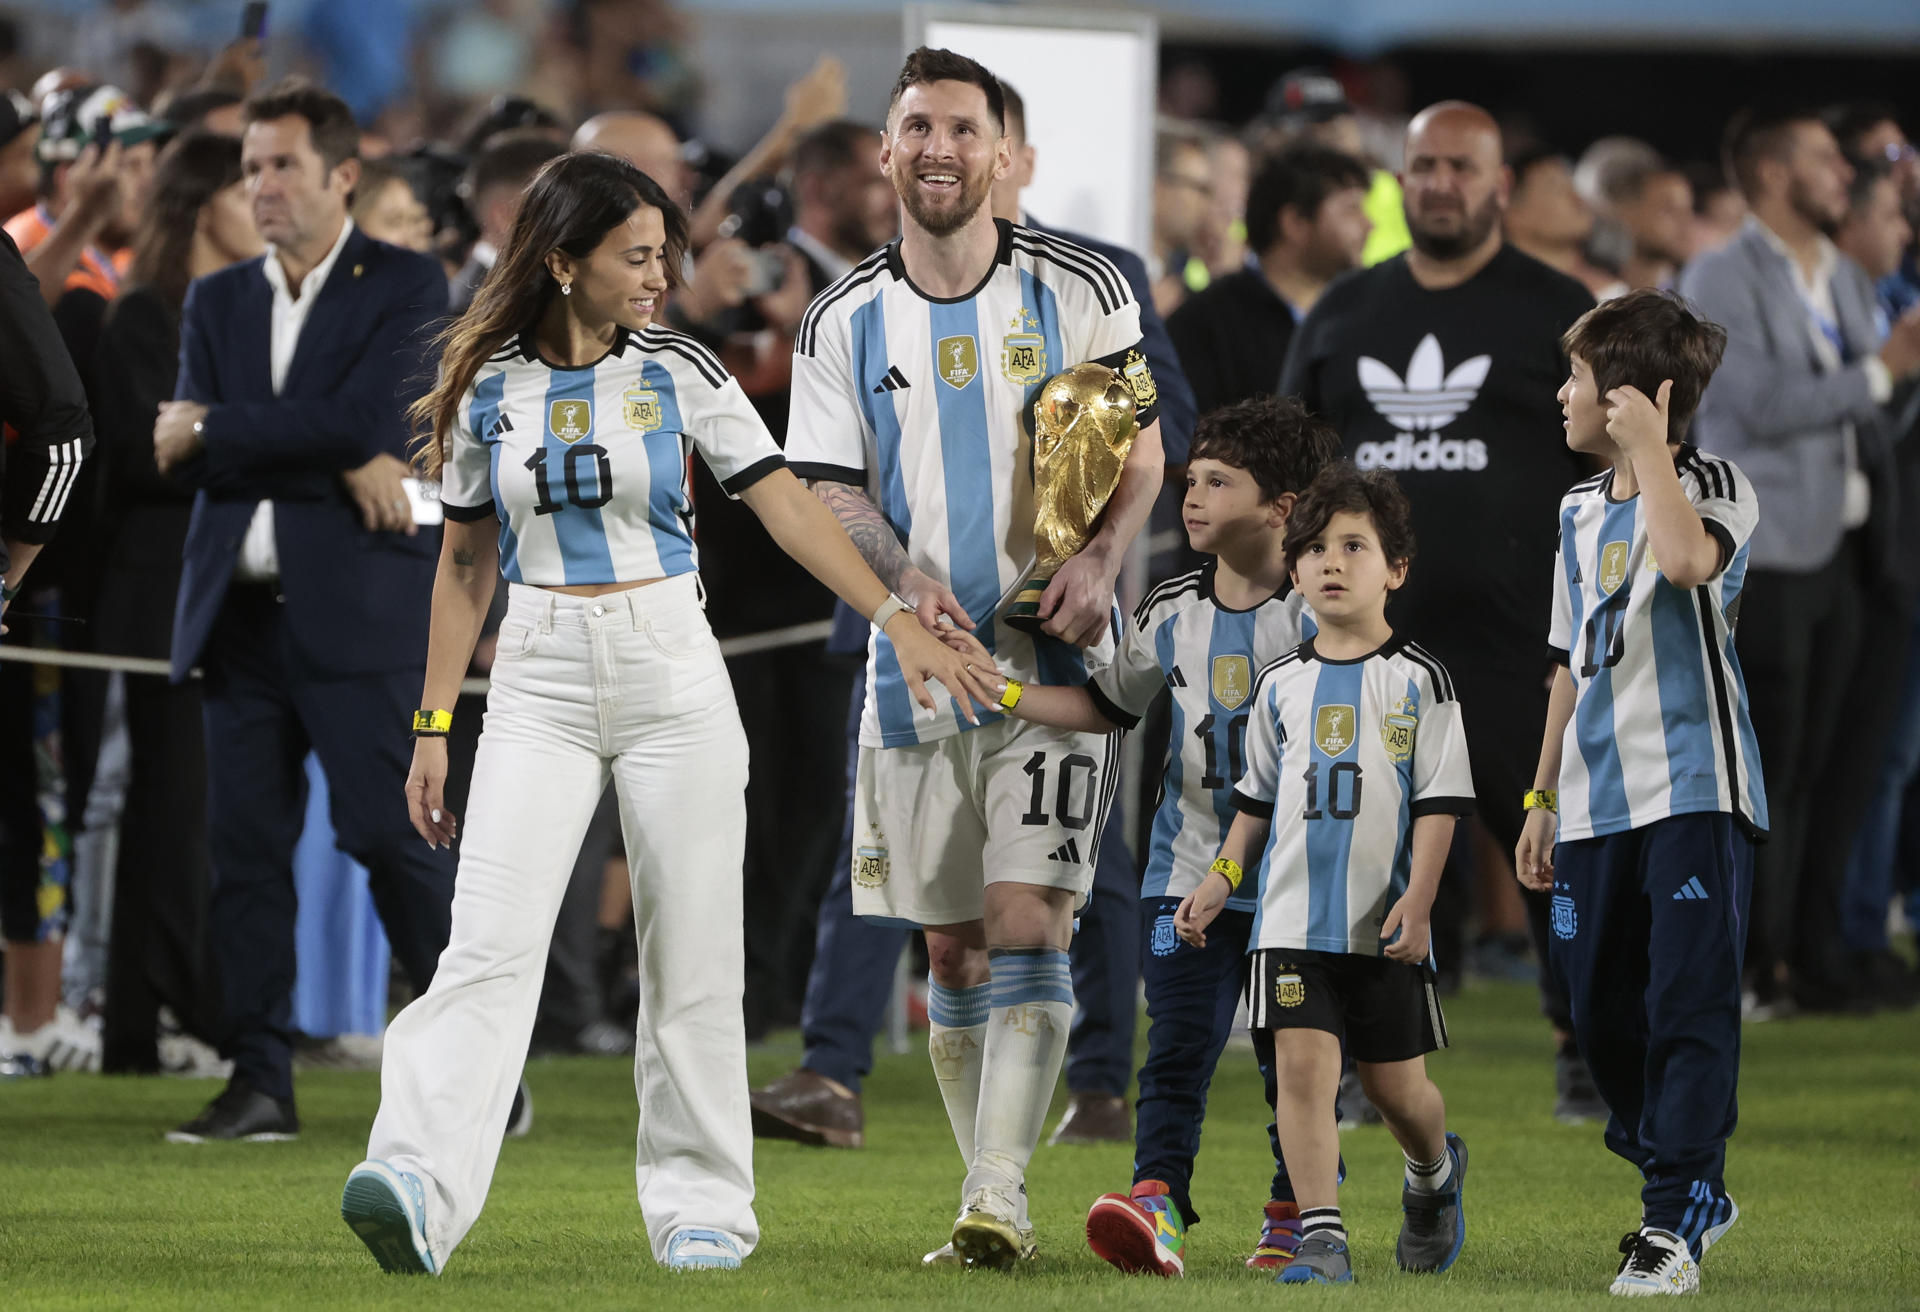 Lionel Messi, capitán de la selección nacional de fútbol Argentina, fue registrado este jueves, 23 de marzo, al caminar con el trofeo de la Copa Mundo, acompañado con su esposa Antonela Roccuzzo (i) e hijos, al final de un partido amistoso contra Panamá, en el estadio Monumental, en Buenos Aires (Argentina). EFE/Juan Ignacio Roncoroni